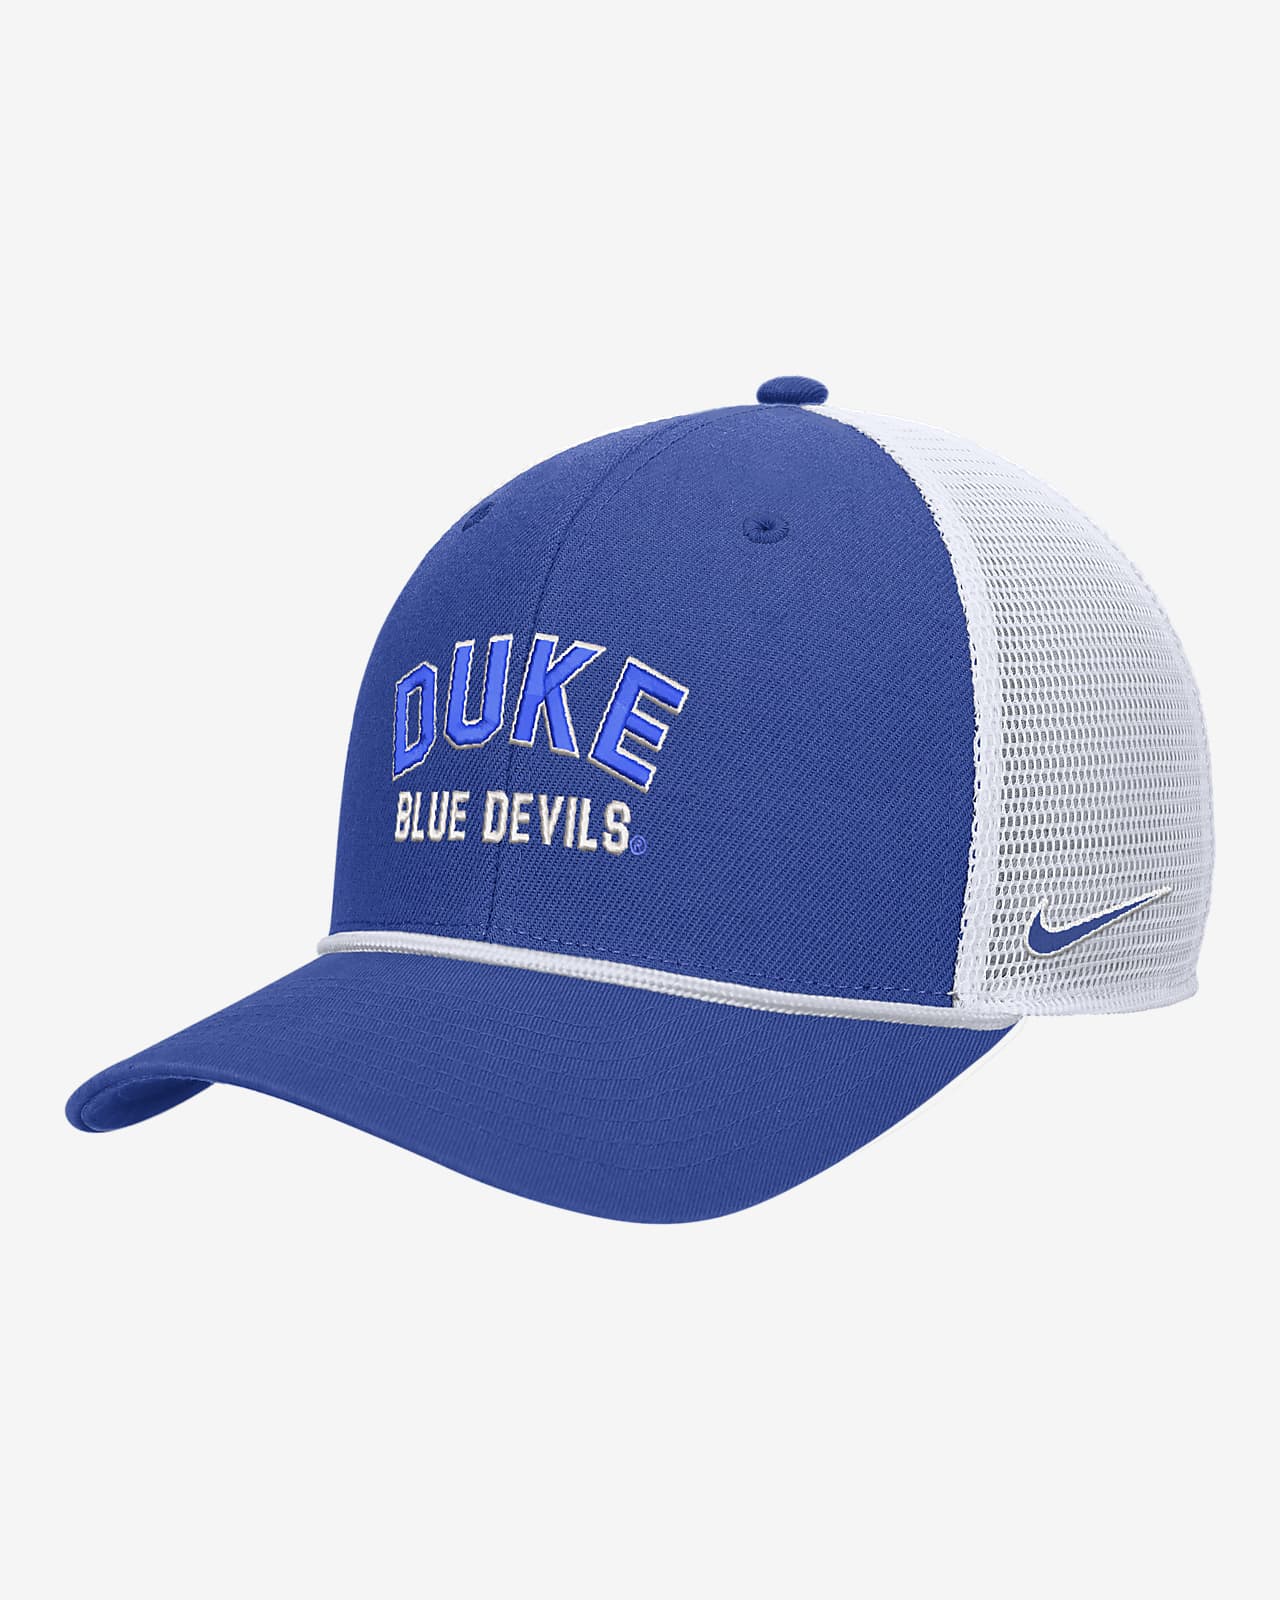 Gorra de rejilla universitaria con cierre a presión Nike Duke